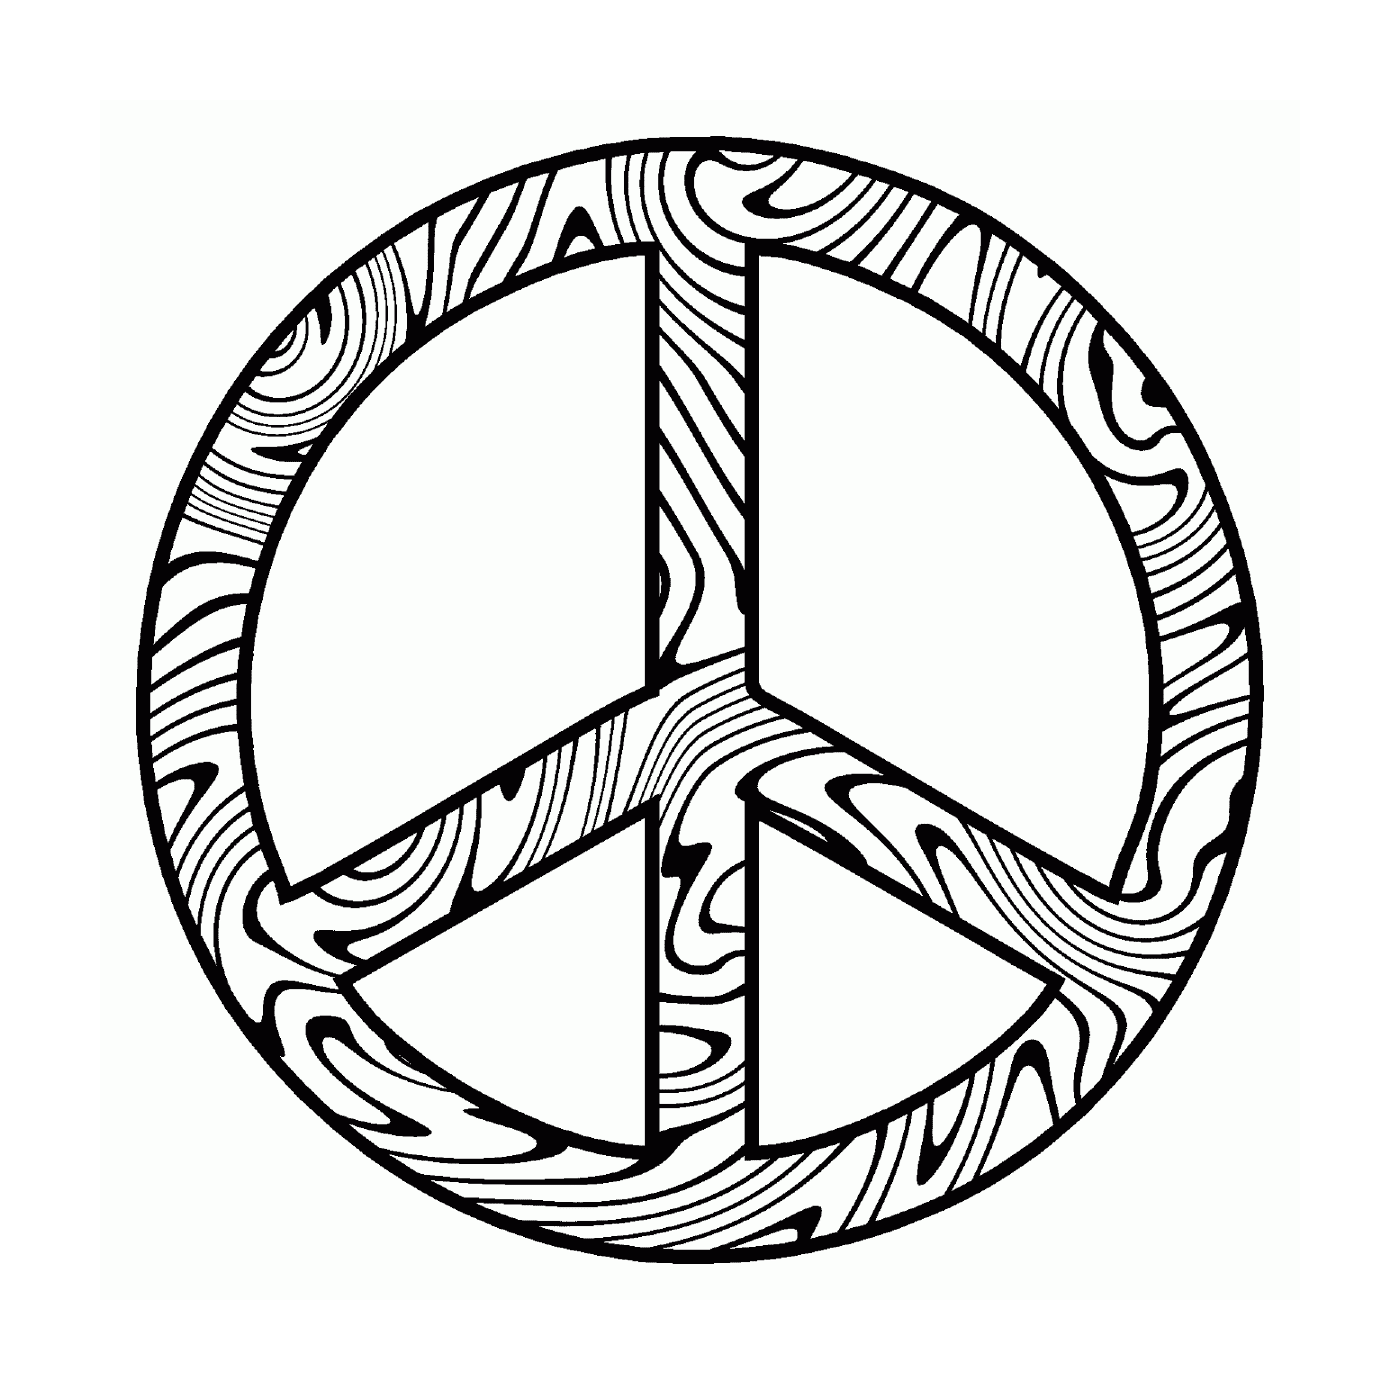   Symbole abstrait de paix 